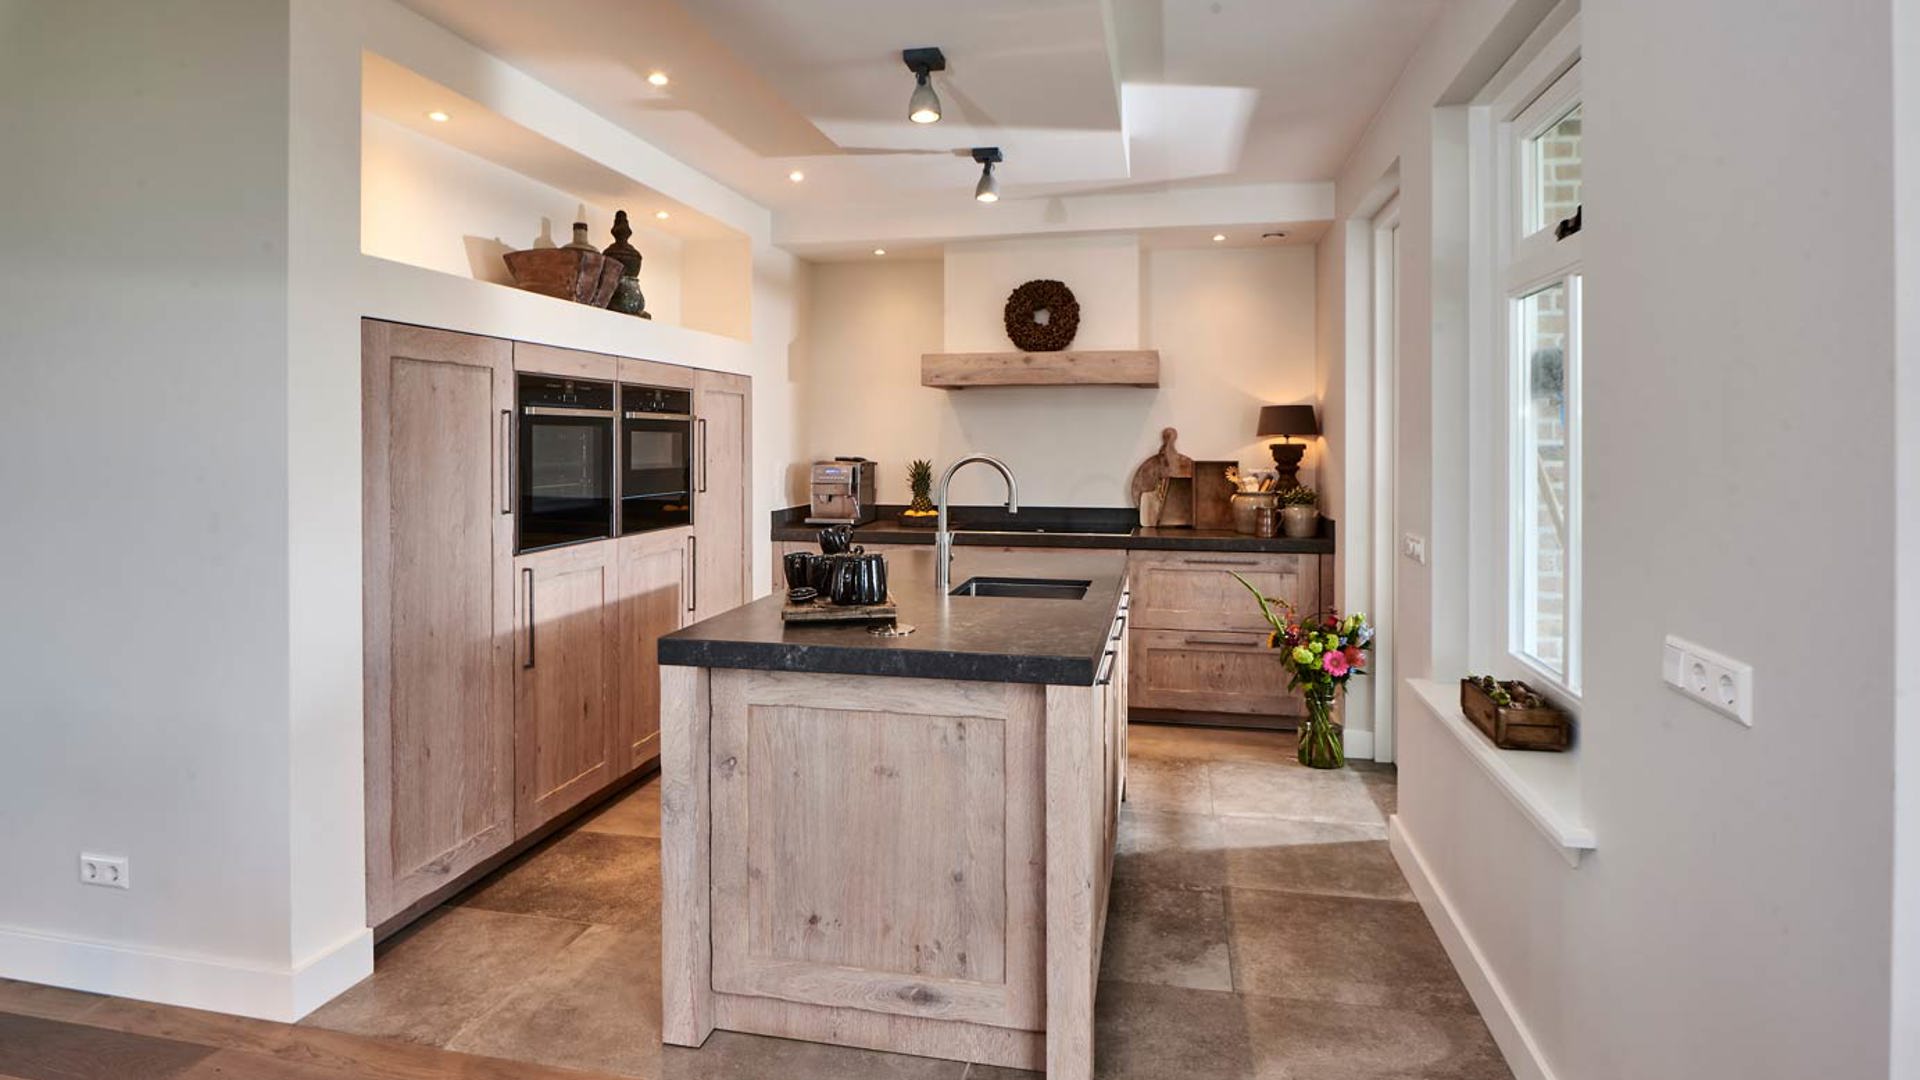 Gek passend tweede Keuken met kastenwand? Lees onze blog vol inspiratie!